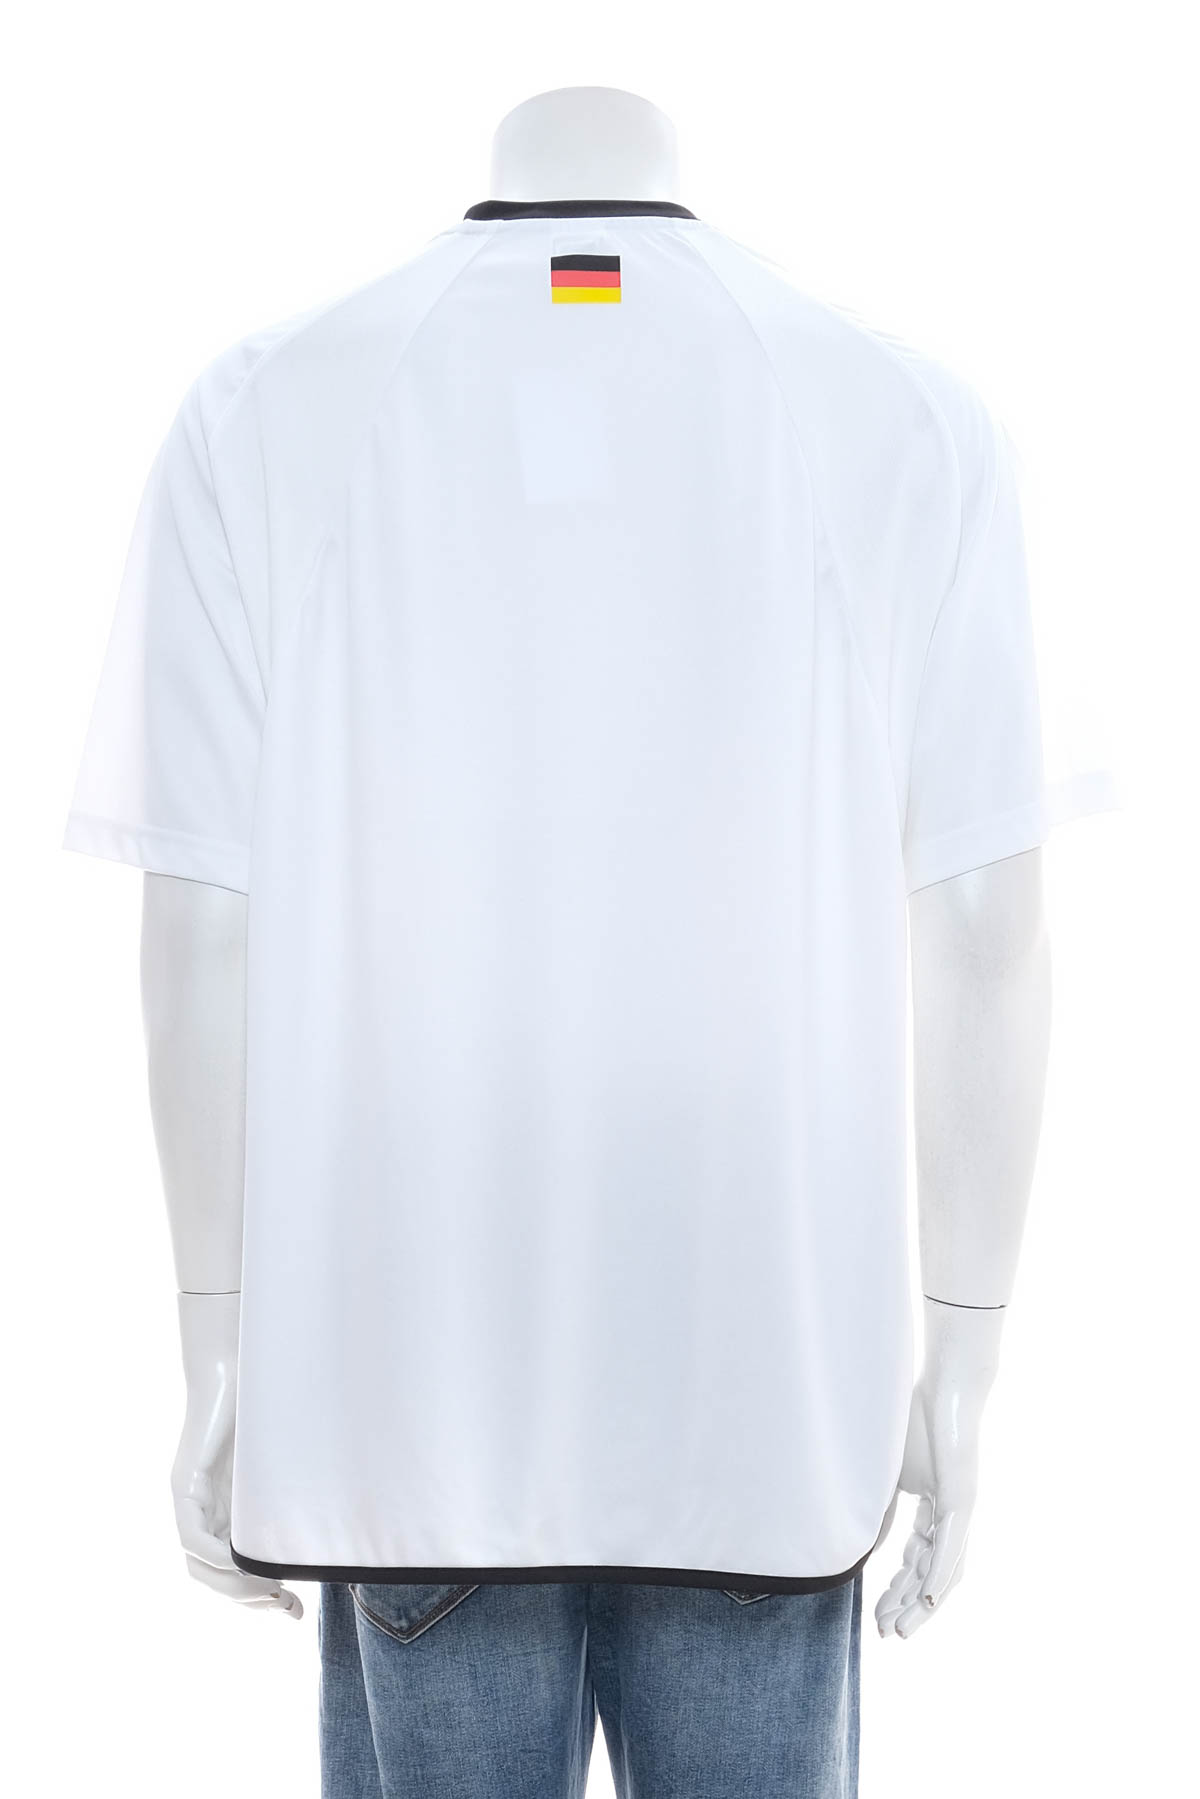 Ανδρικό μπλουζάκι - DFB - 1